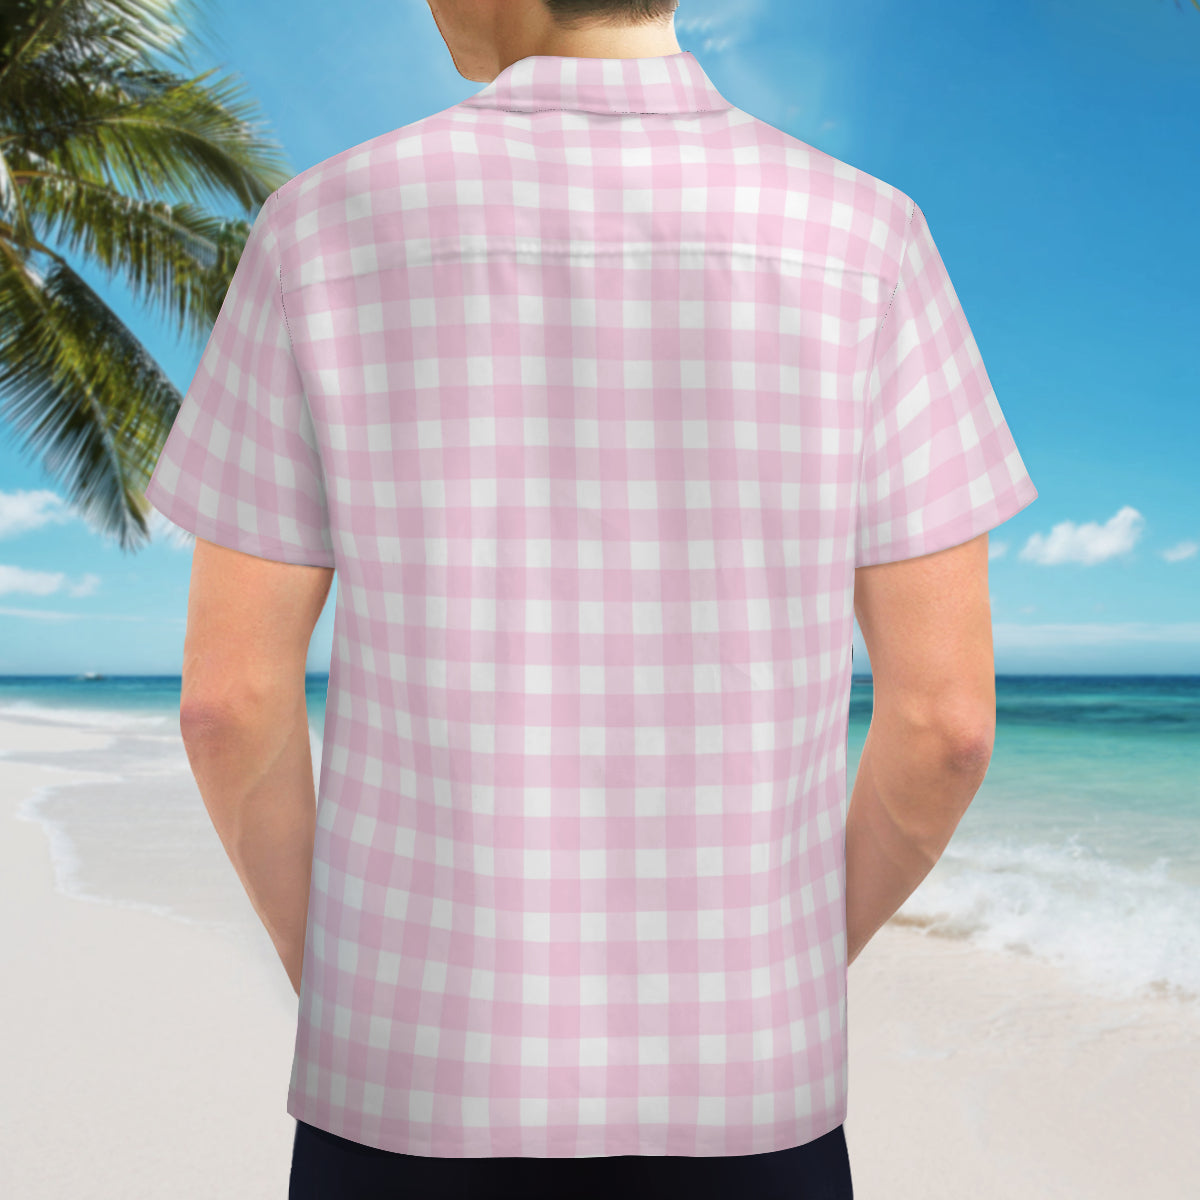 Pink Gingham Shirt Men, Retro Shirt Men, Pink Shirt Men, Vintage Style Shirt Men, Pink Top Men, Men's Gingham Shirt